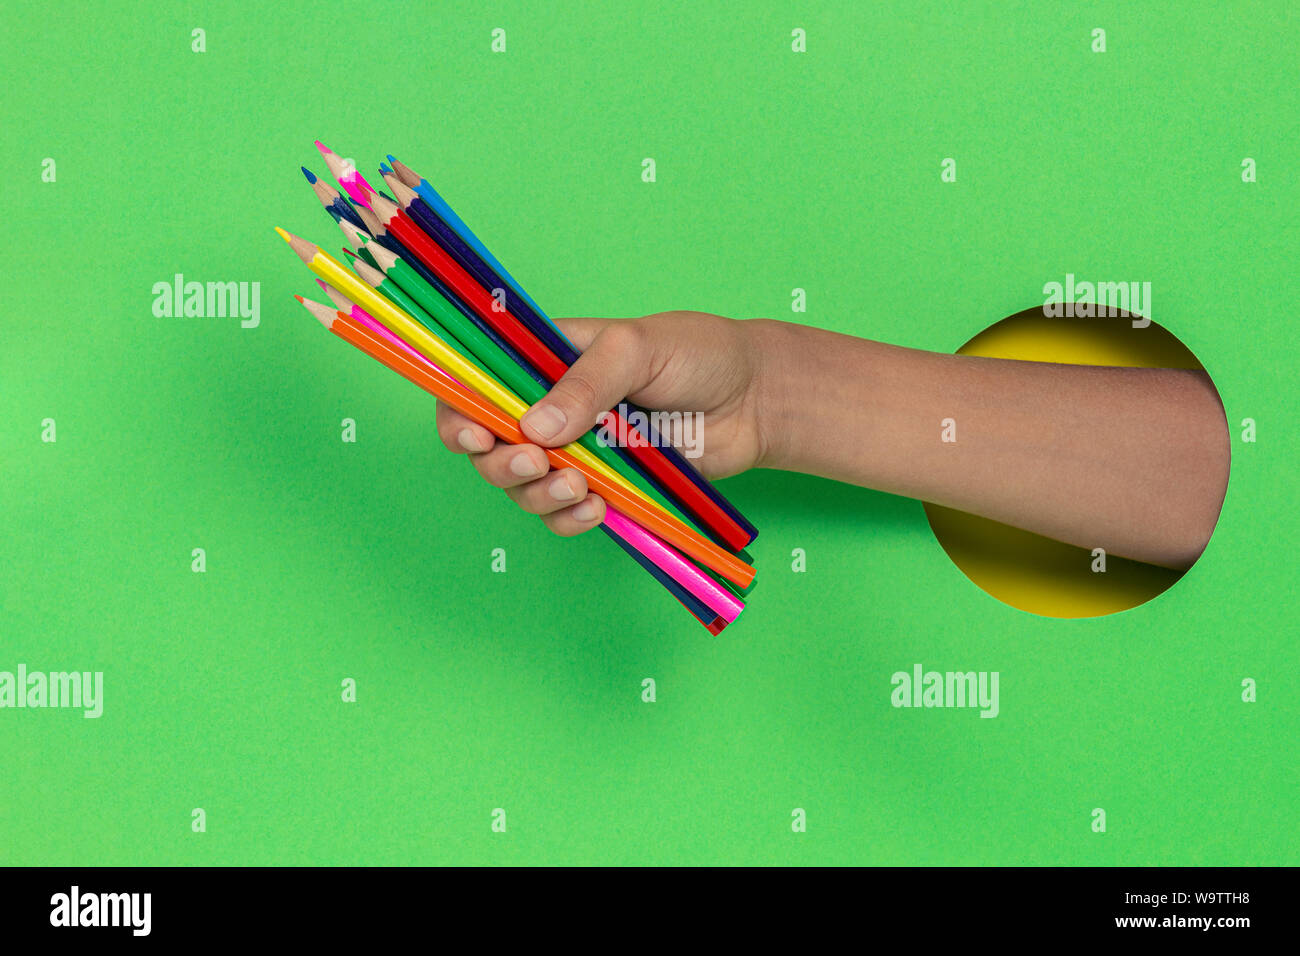 Kid holding matite colorate a mano attraverso il foro su sfondo verde chiaro Foto Stock